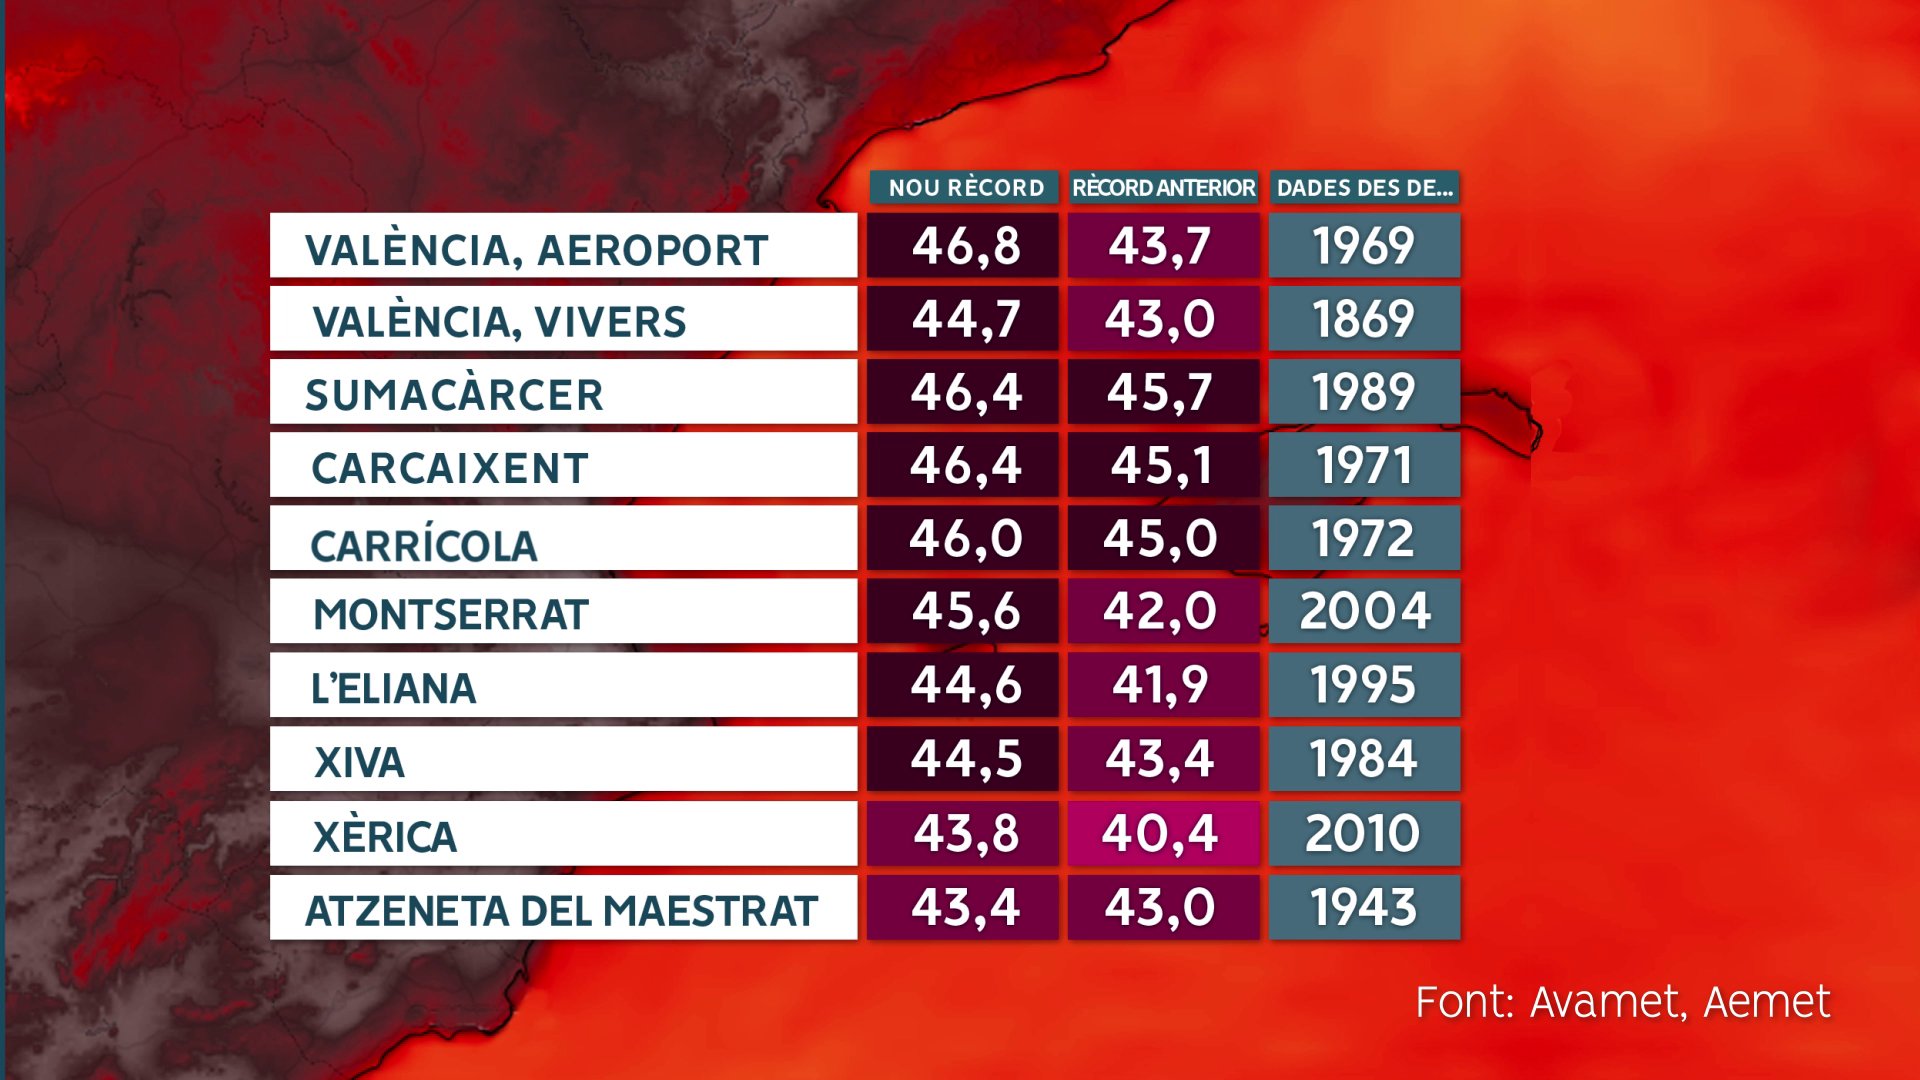 <p>Température exceptionnelle de 46.8°C relevée à l'aéroport de Valence en Espagne, battant le record absolu de juillet 1986 de plus de 3°C (43.4°C) !<br />L'ensemble de la Communauté valencienne est soumis à des températures exceptionnelles, avec 46.3°C à Beniganim, 46.2°C à La Pobla Llarga, 46.1°C à Sumacarcer sur le réseau Avamet.</p>